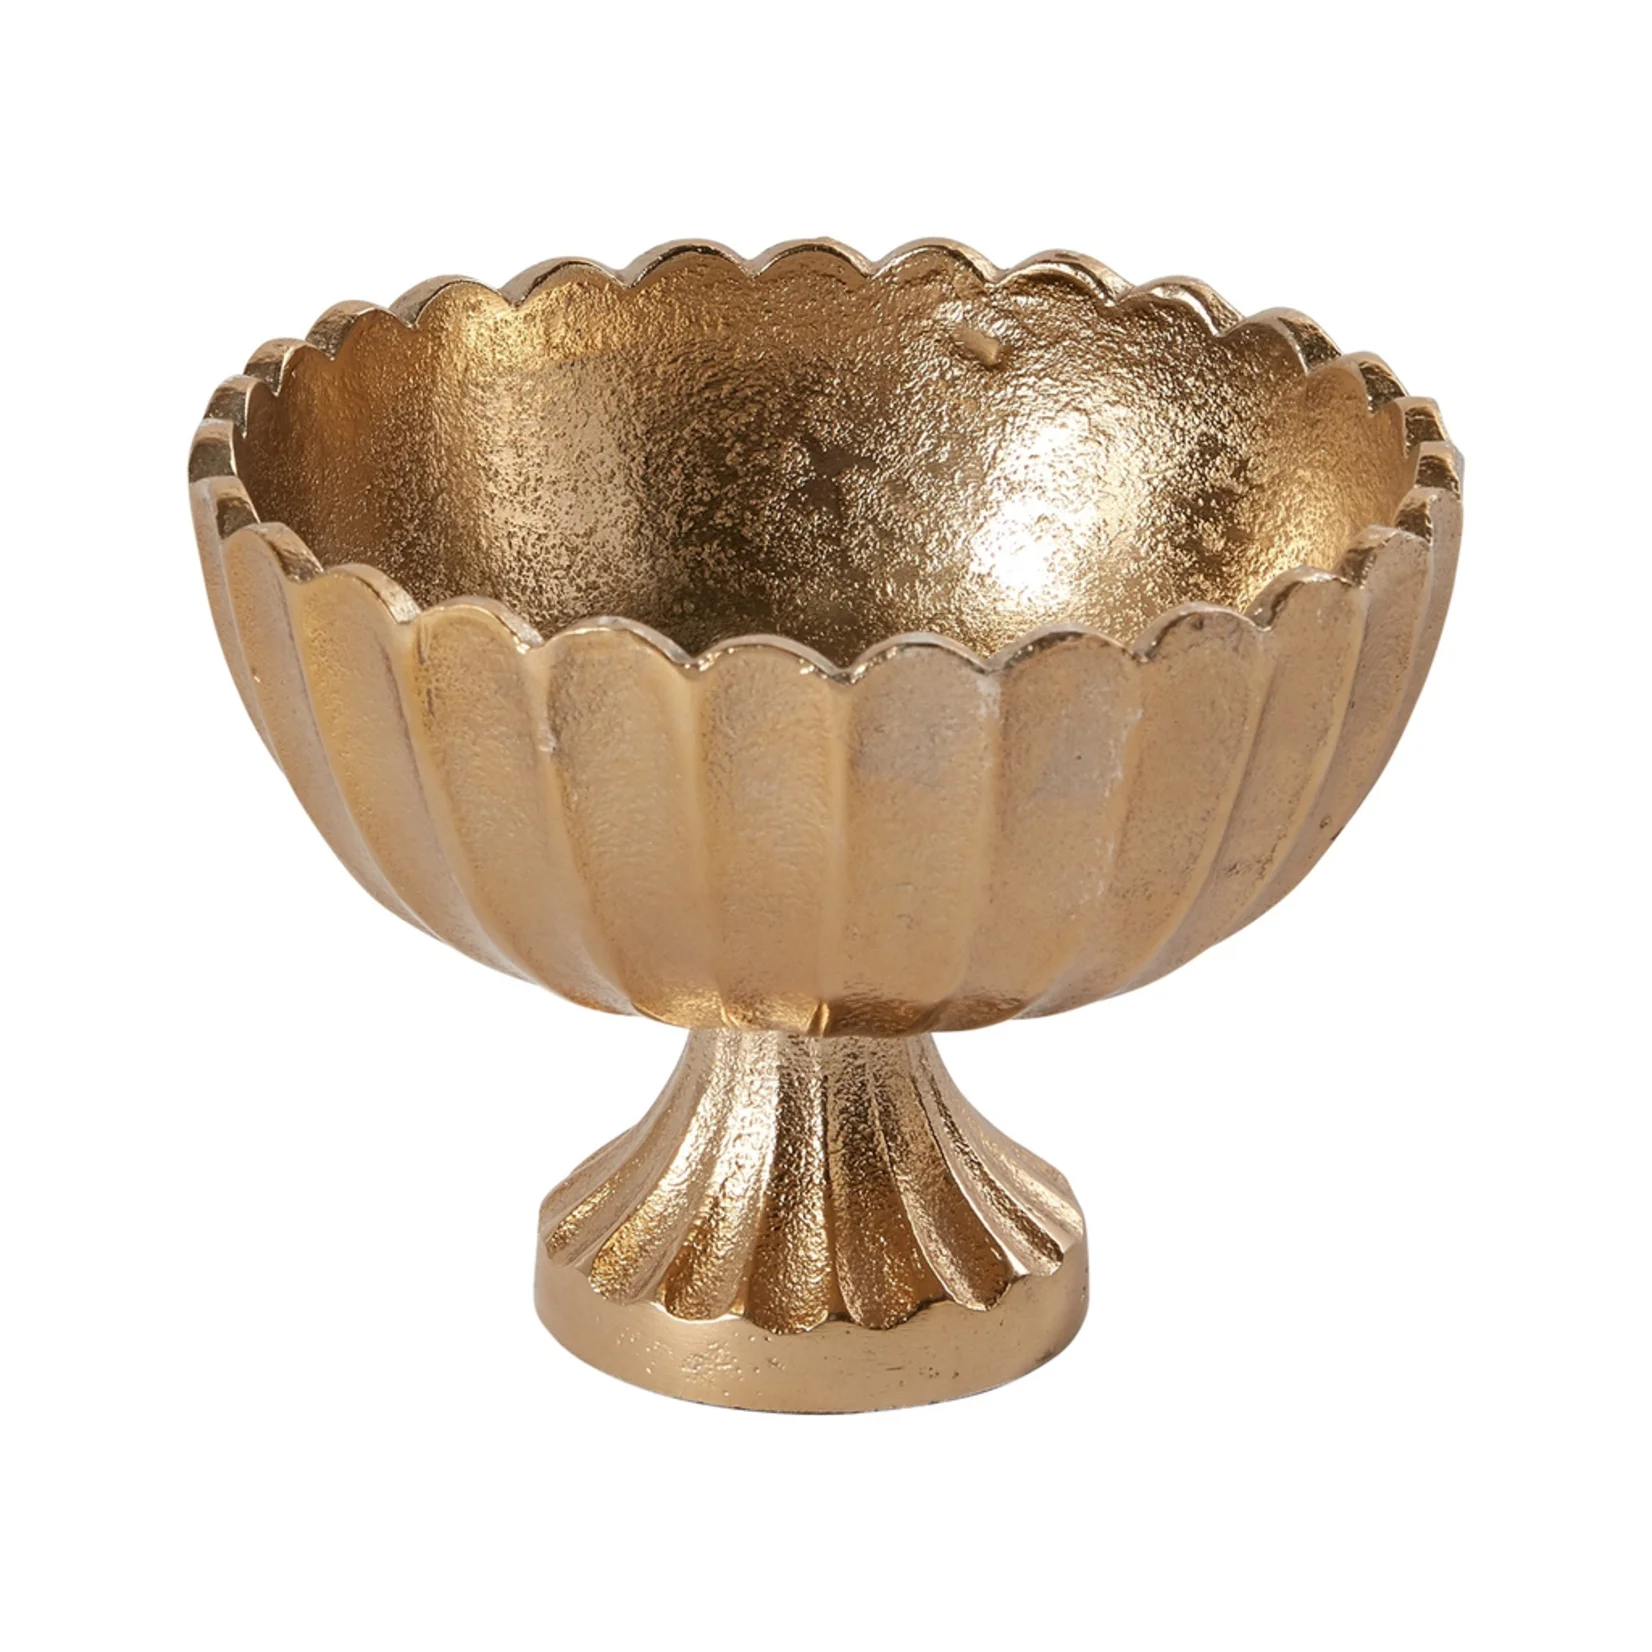 Pedestal Bowl Vase for Table Decoration Metal Compote Bowl Flower Arrangement Pots Bulk Flower Holder for Indoor & Outdoor Decor